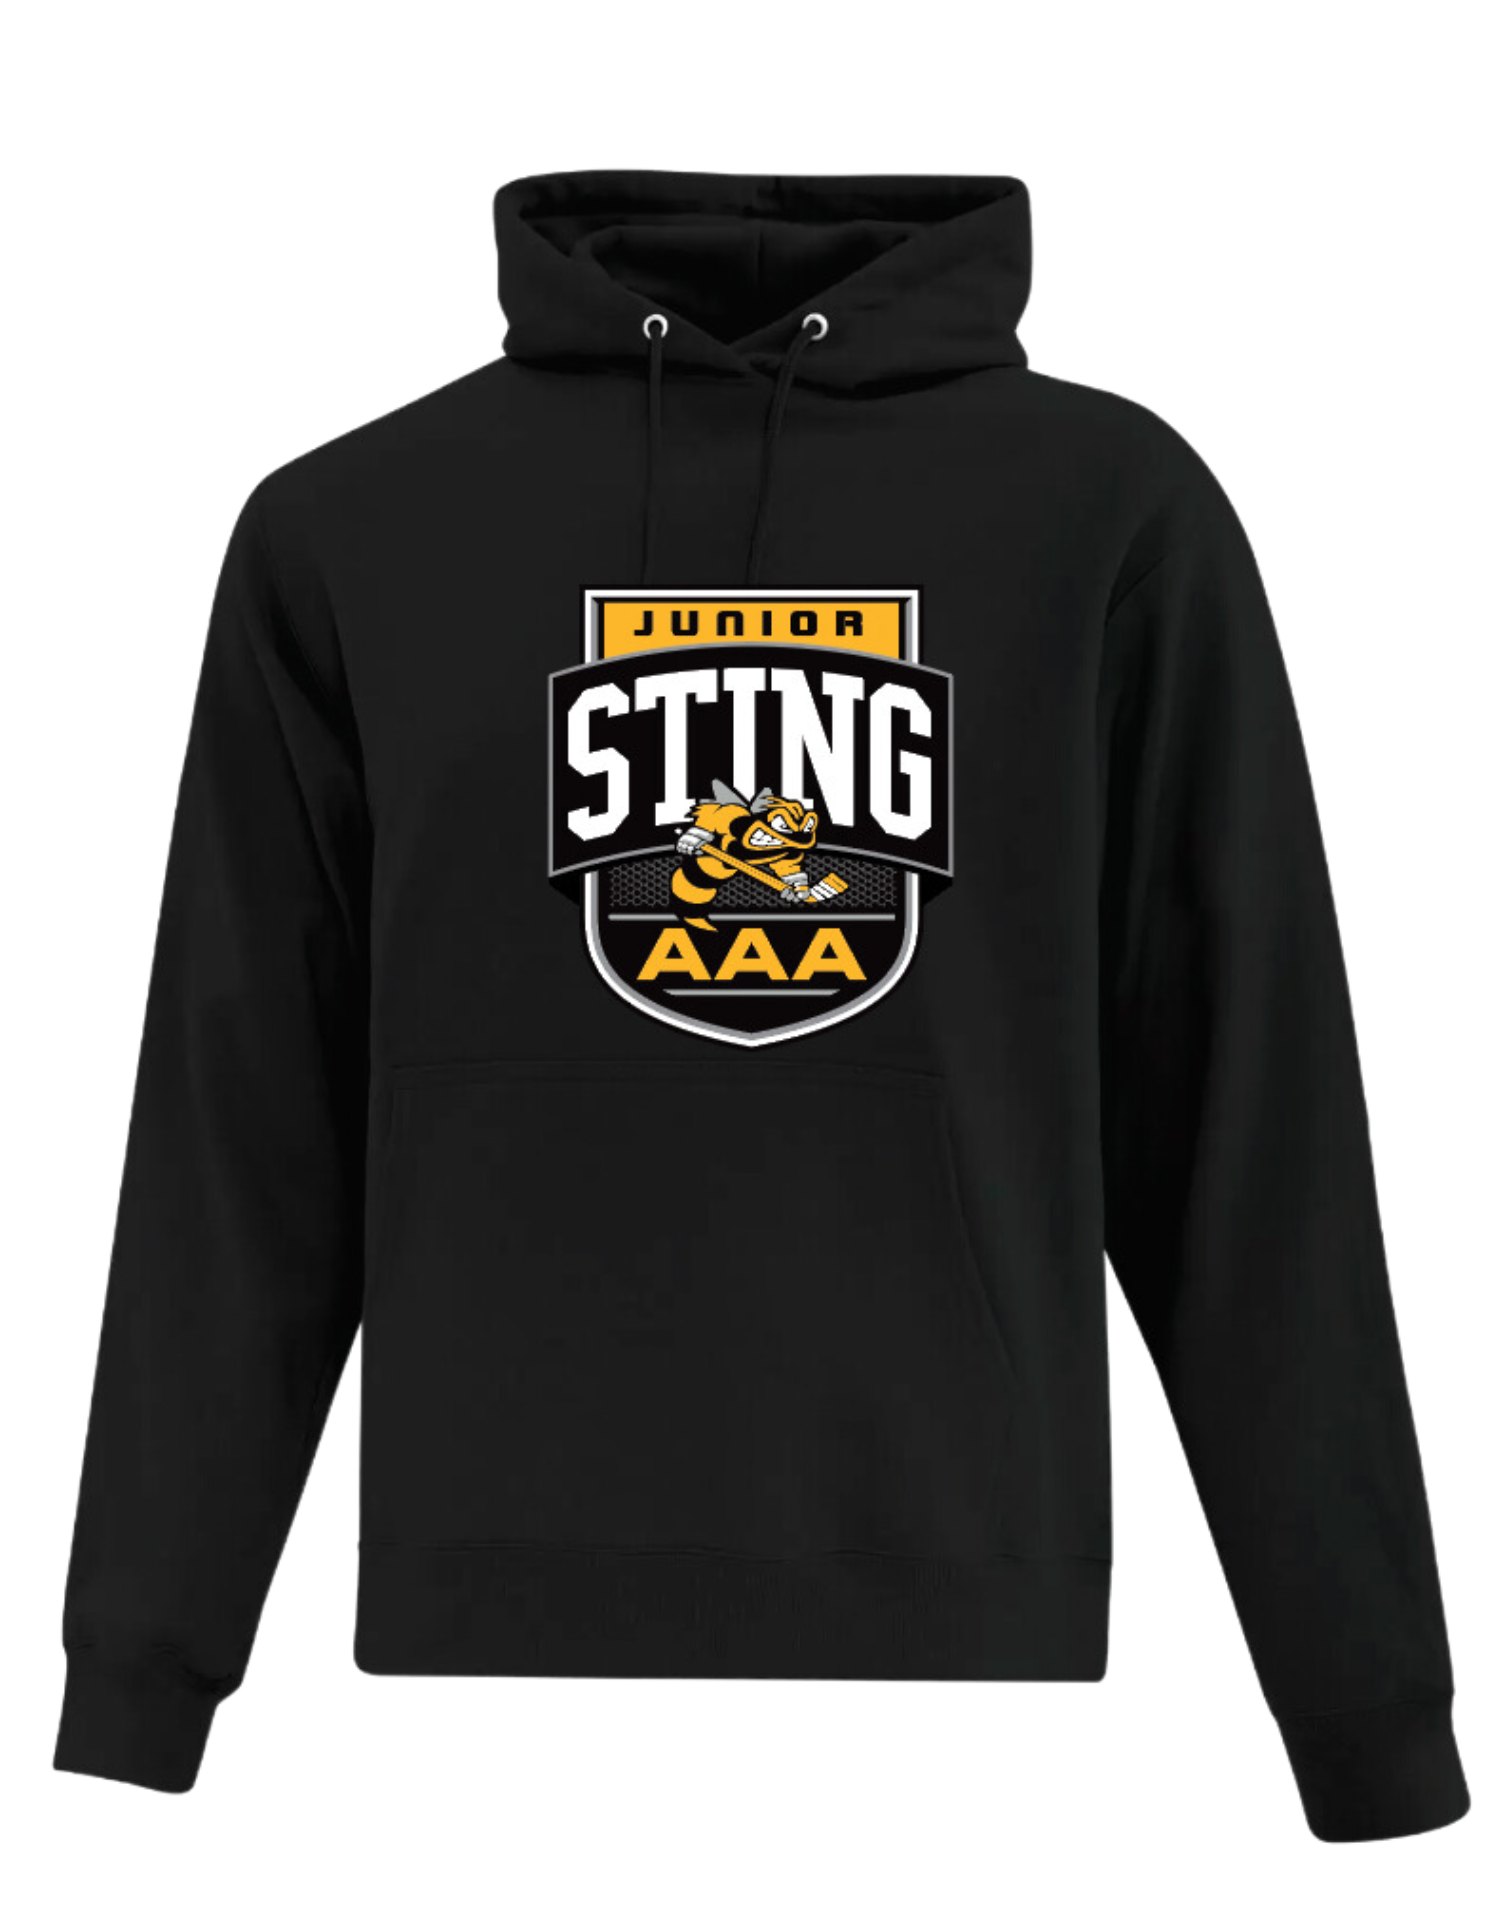 Jr Sting AAA Hoodie- Adult